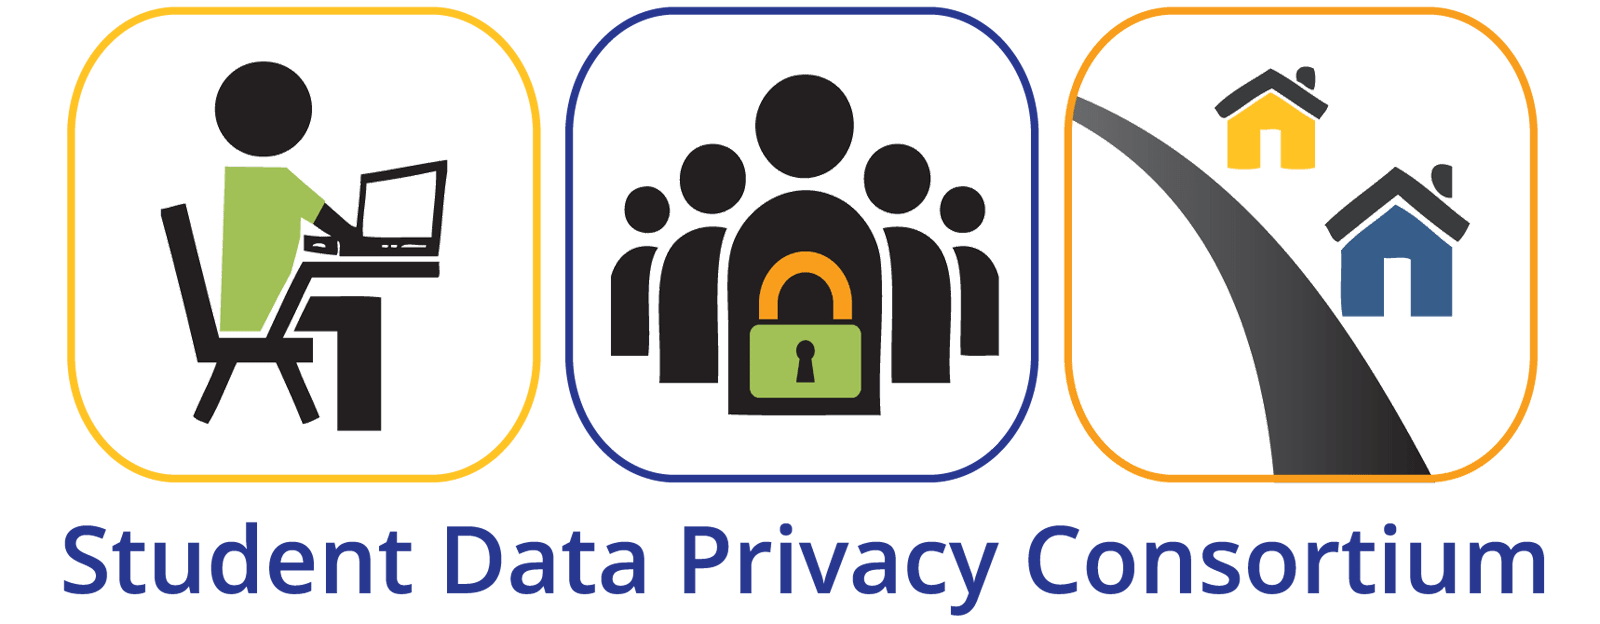 Student Data Privacy Consortium